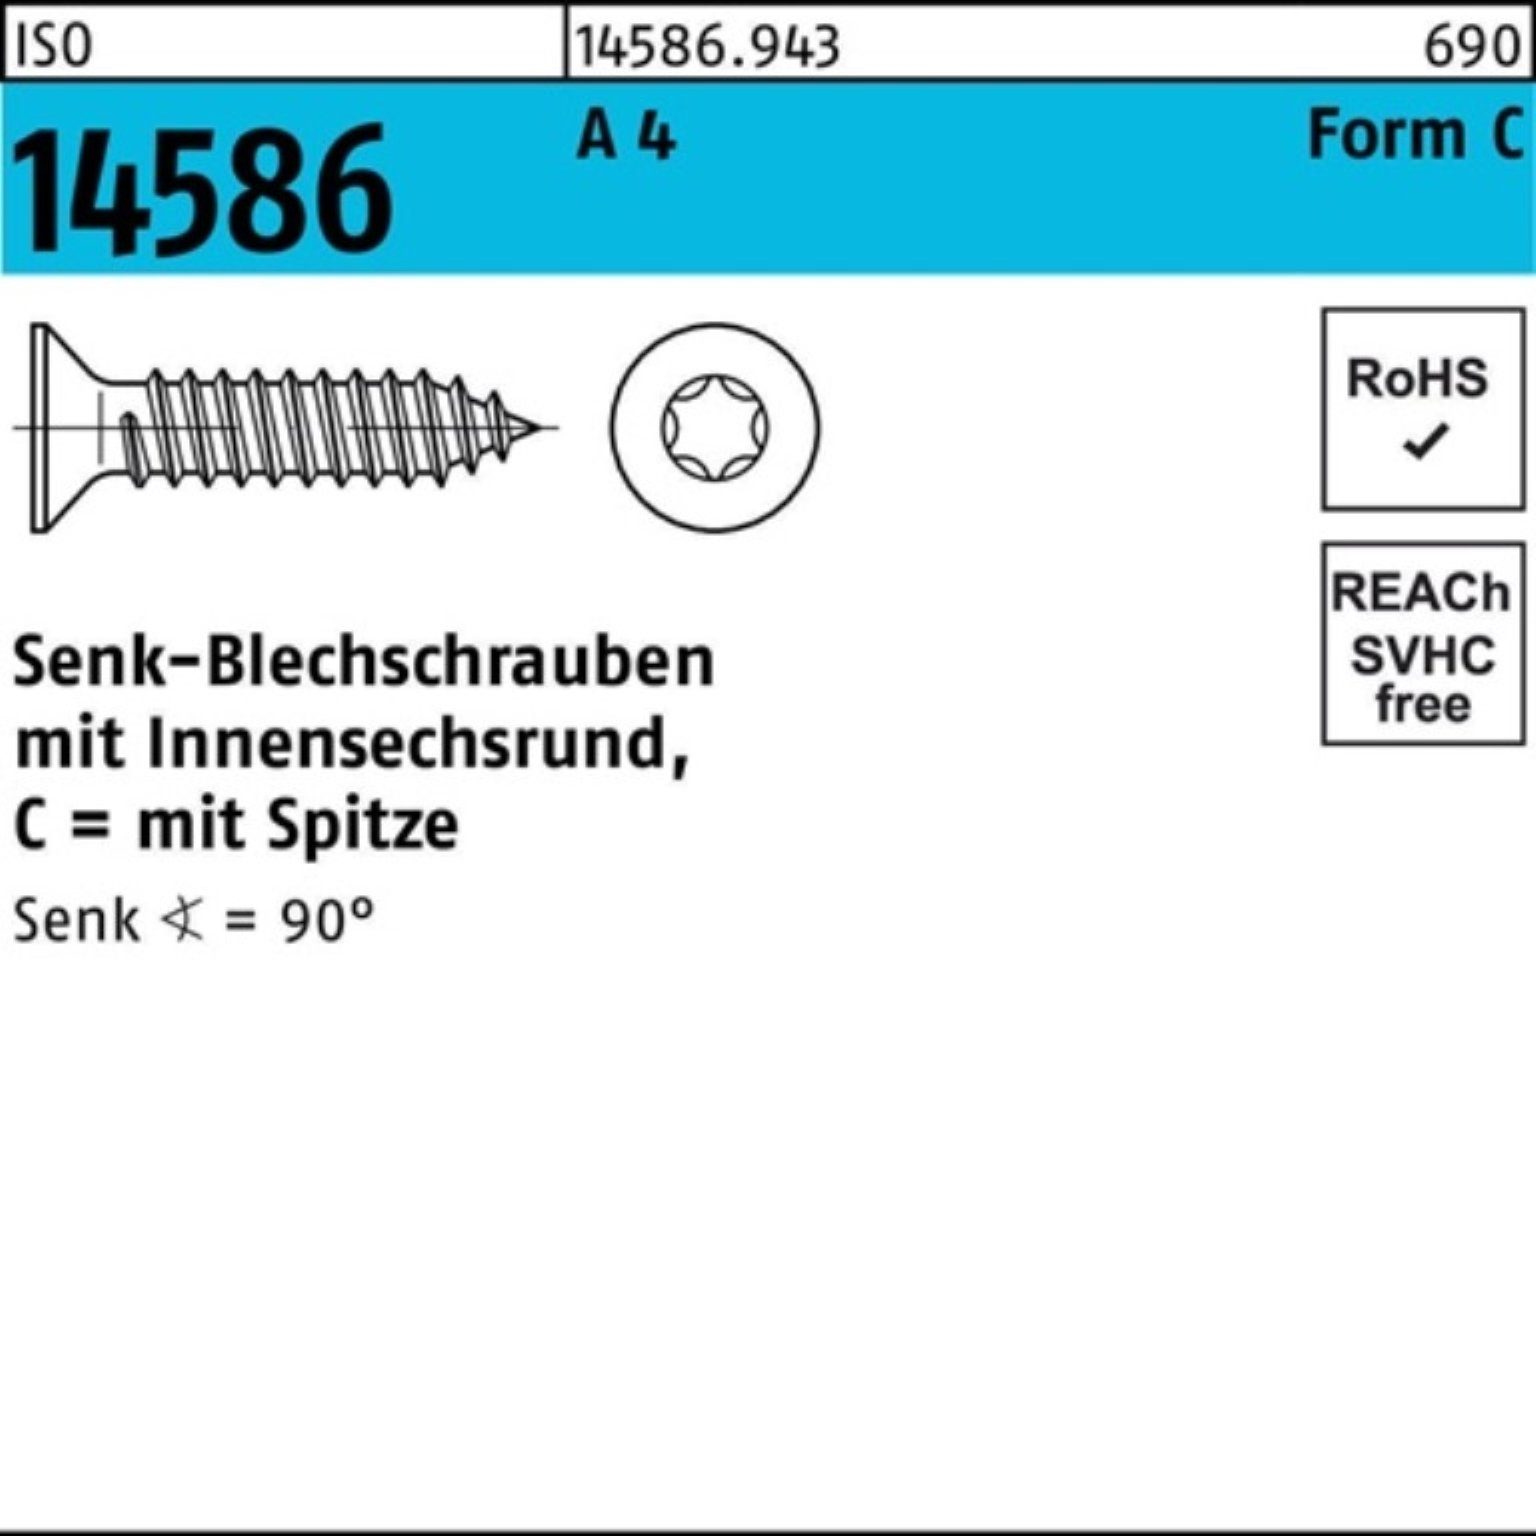 ISO ISR/Spitze Senkblechschraube 250 Reyher Pack 4 Schraube 6,3x 38-T30 250er 14586 A